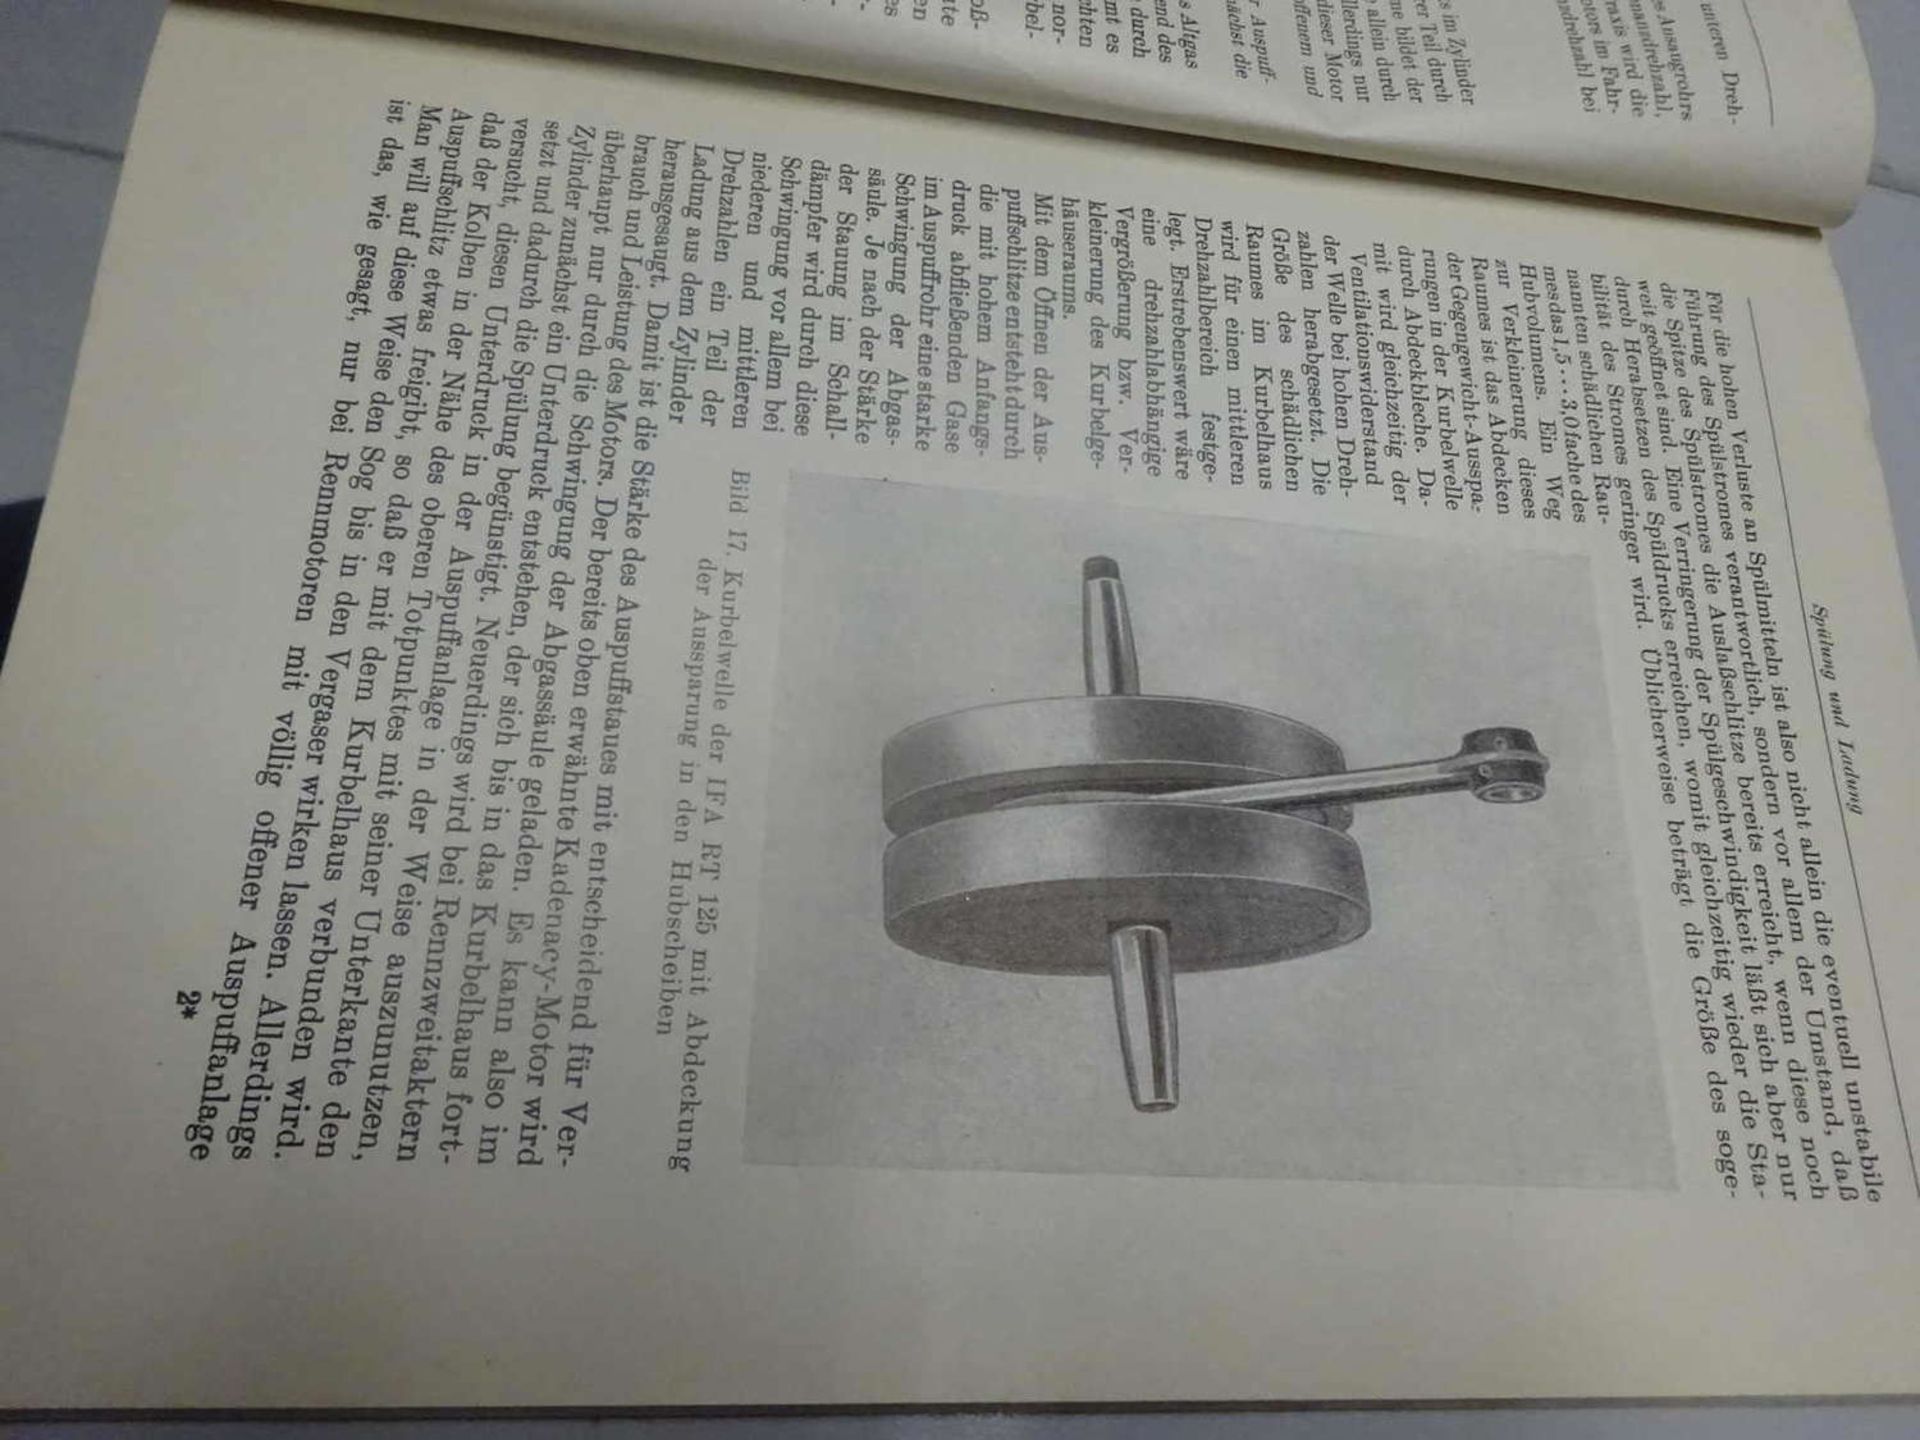 Michael Heise "Zweitakt Fahrzeugmotoren", Fachbuchverlag Leipzig, 1955Michael Heise "two-stroke - Bild 2 aus 2